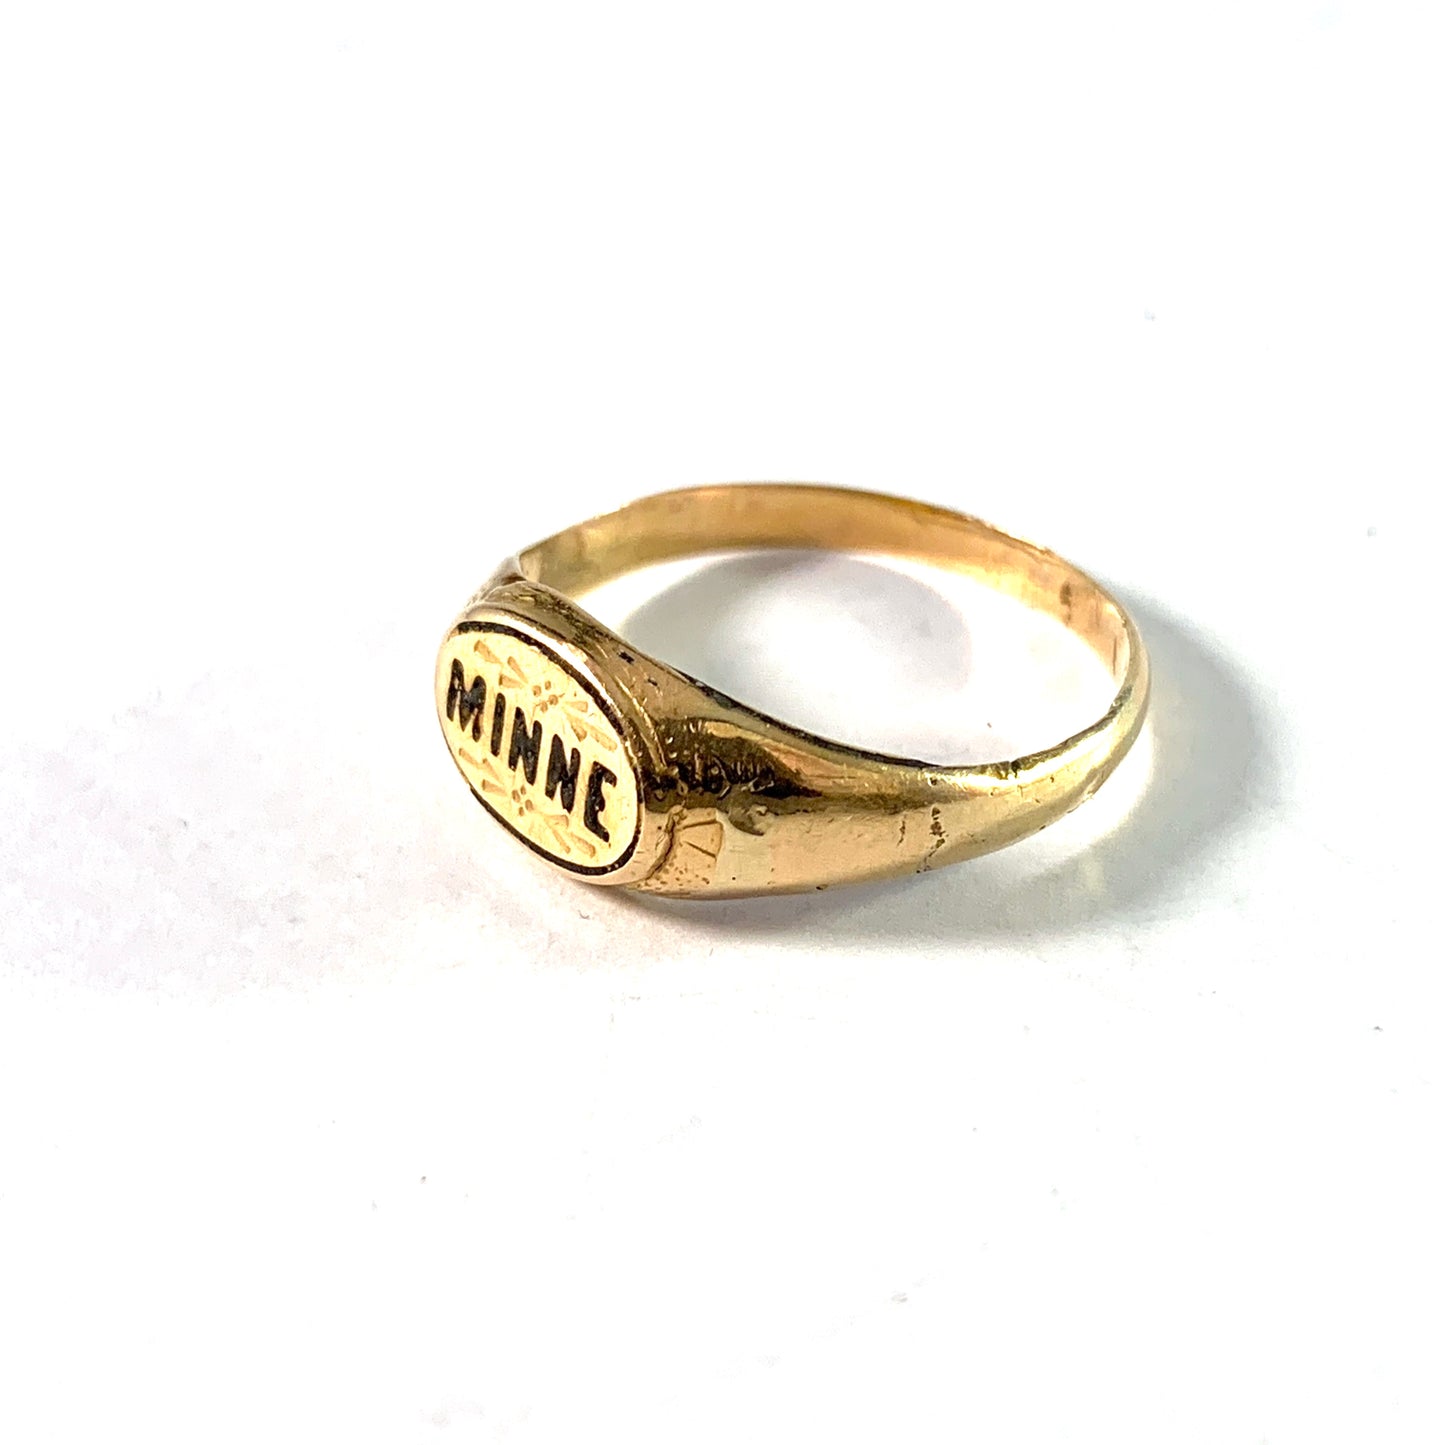 Sweden, Antique 18k Gold Enamel Memory Mourning Ring.